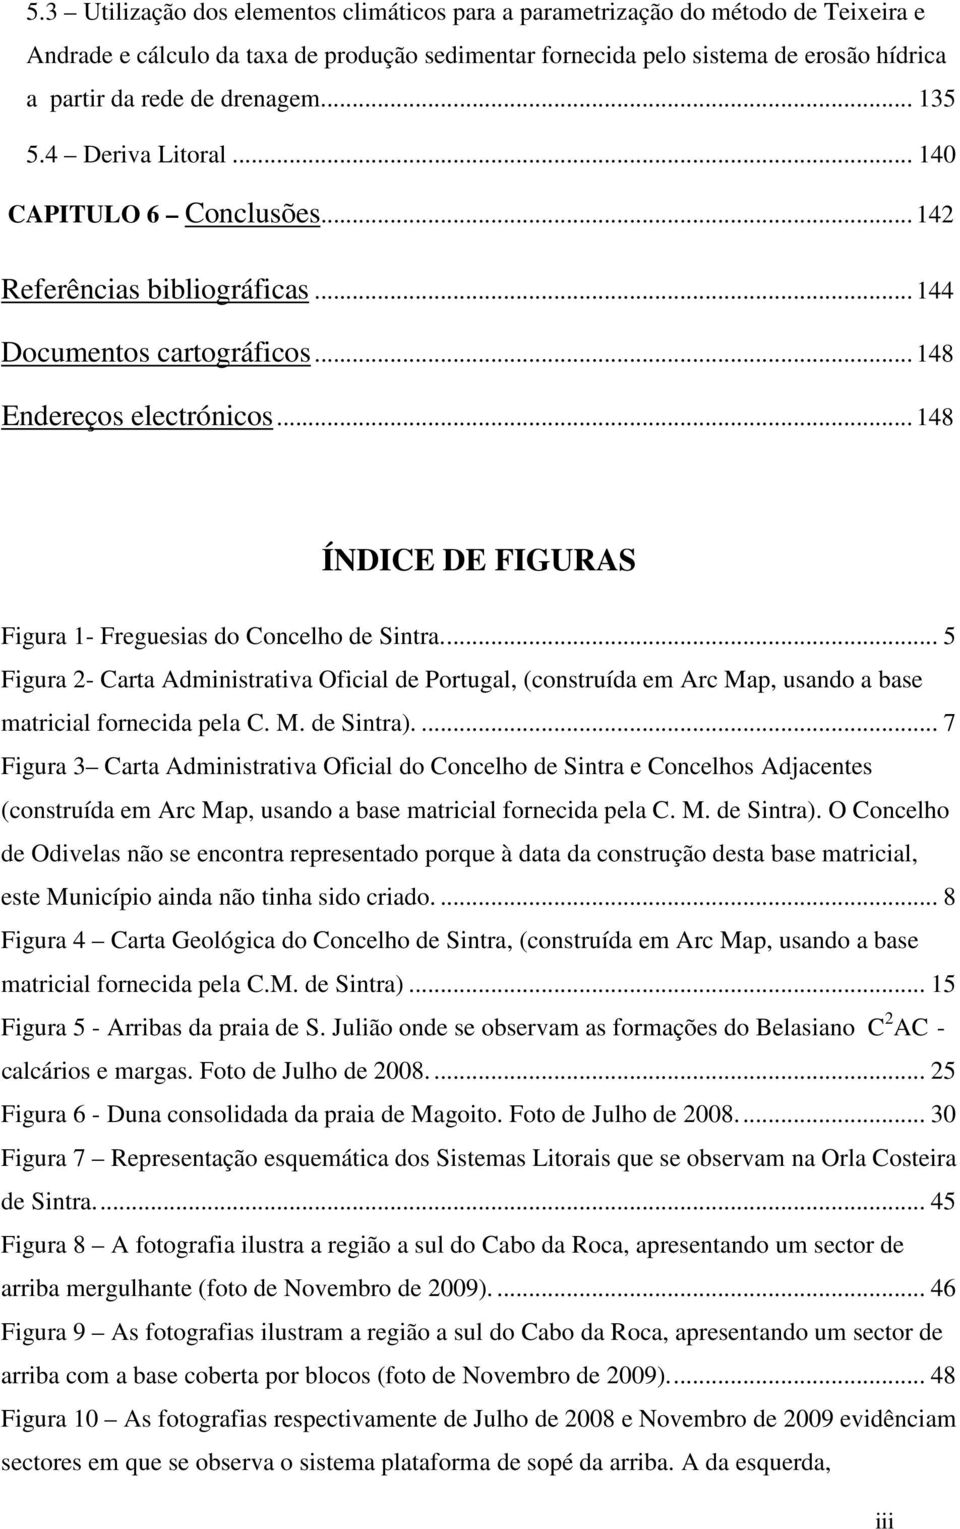 .. 148 ÍNDICE DE FIGURAS Figura 1- Freguesias do Concelho de Sintra... 5 Figura 2- Carta Administrativa Oficial de Portugal, (construída em Arc Map, usando a base matricial fornecida pela C. M. de Sintra).